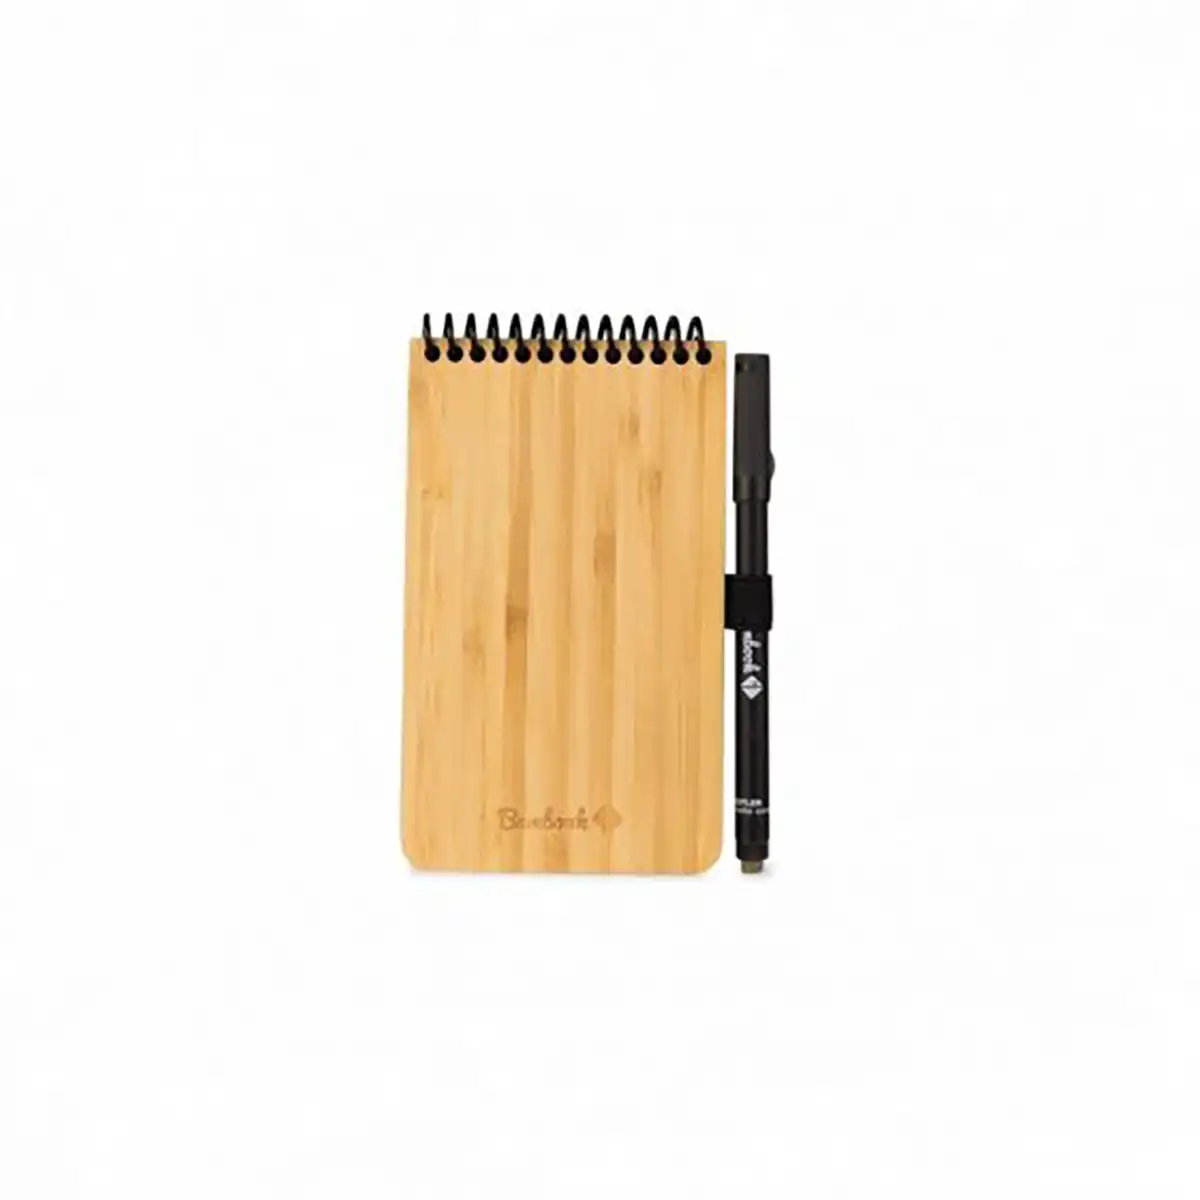 Composez votre Bambook et créez votre cahier effaçable